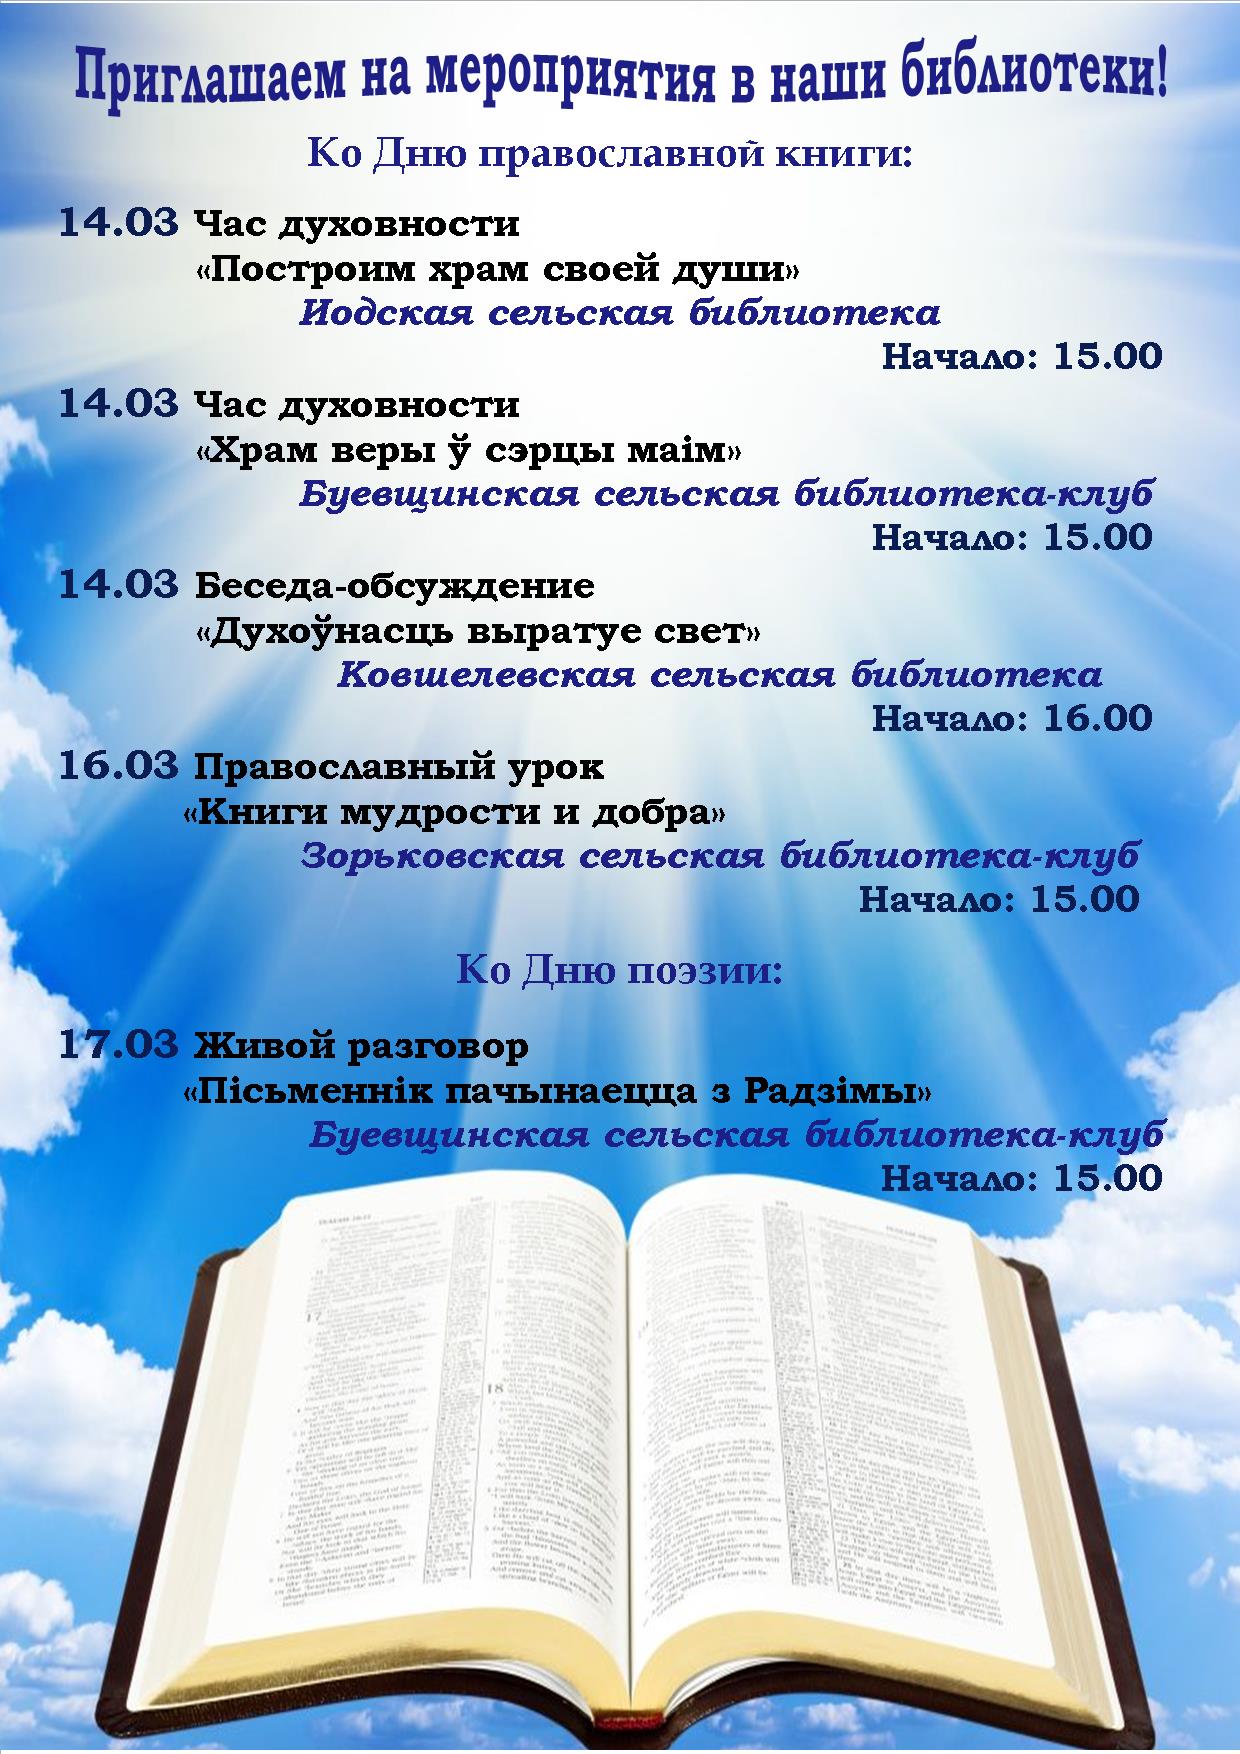 Ашифа день православной книги